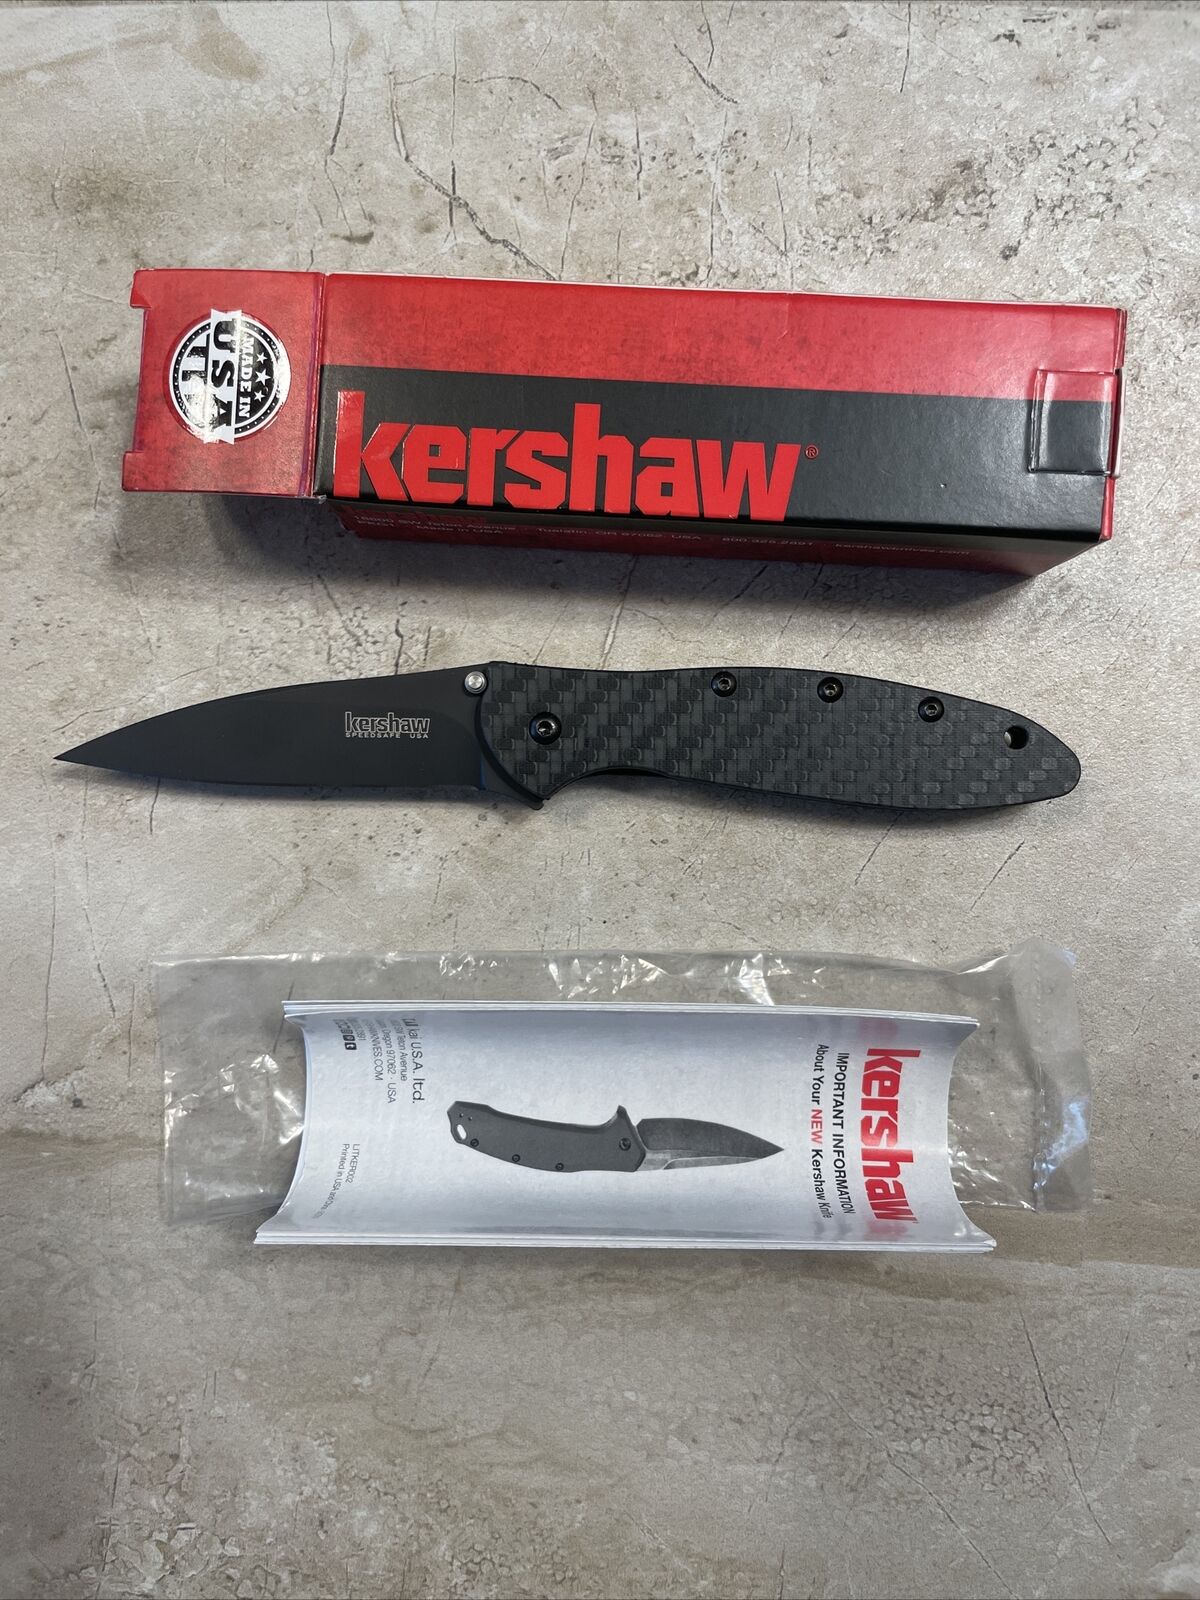 KERSHAW Leek Black Assisted Opening Knife 1660GLCFBLK Carbon Fiber Handles RARE